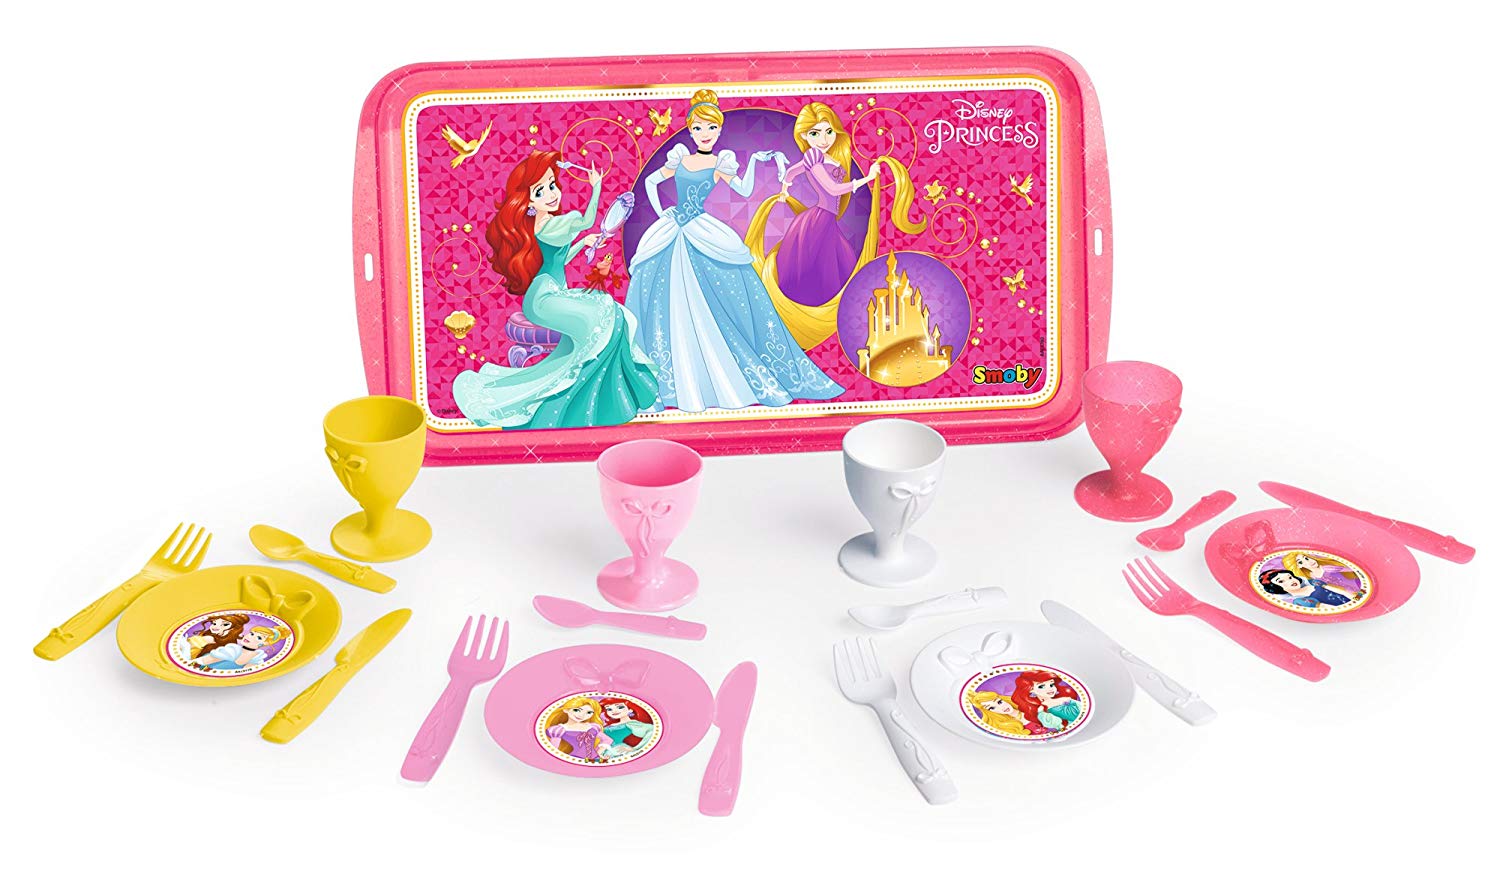 Servicio de Té con bandeja Disney Princess